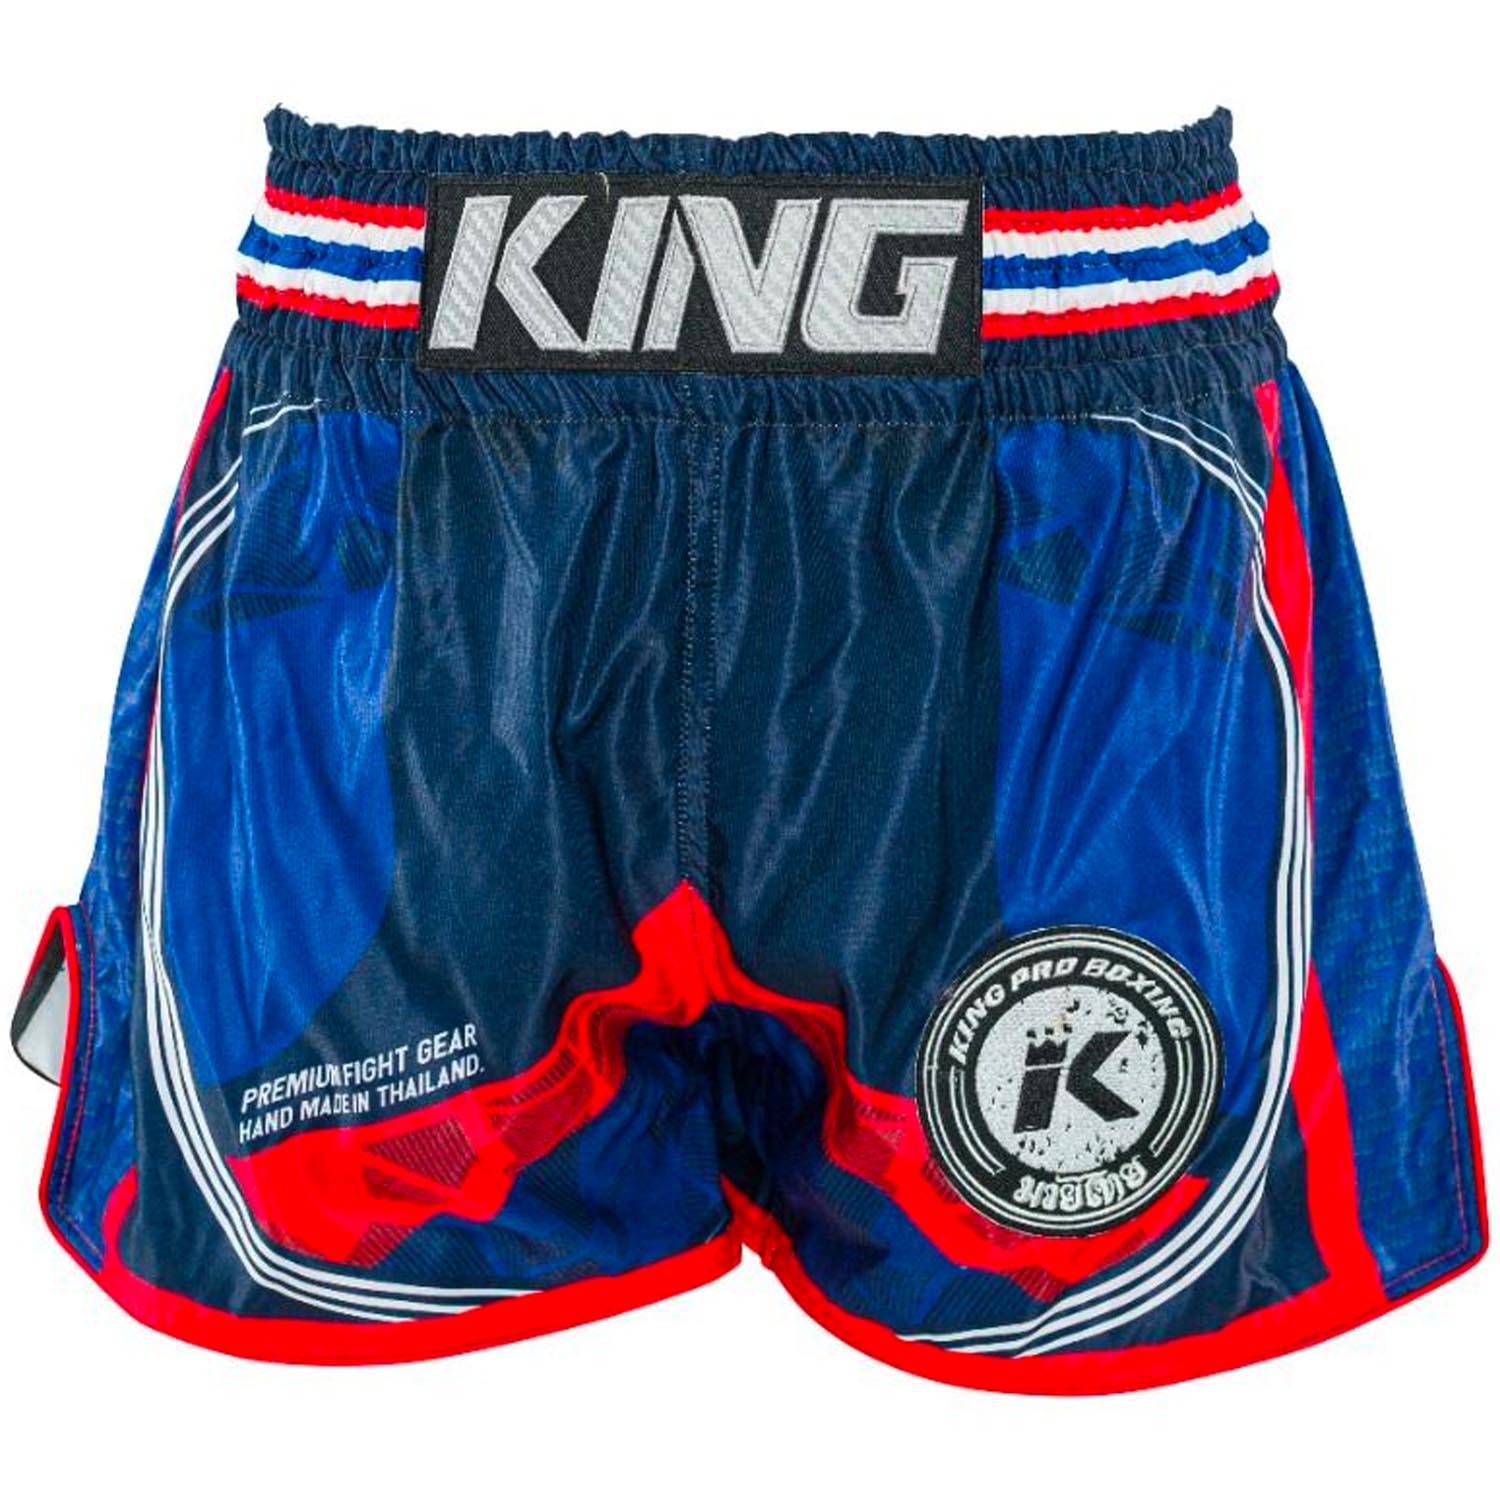 KING PRO Boxing Muay Thai Shorts, Flag 2, blau-rot, L